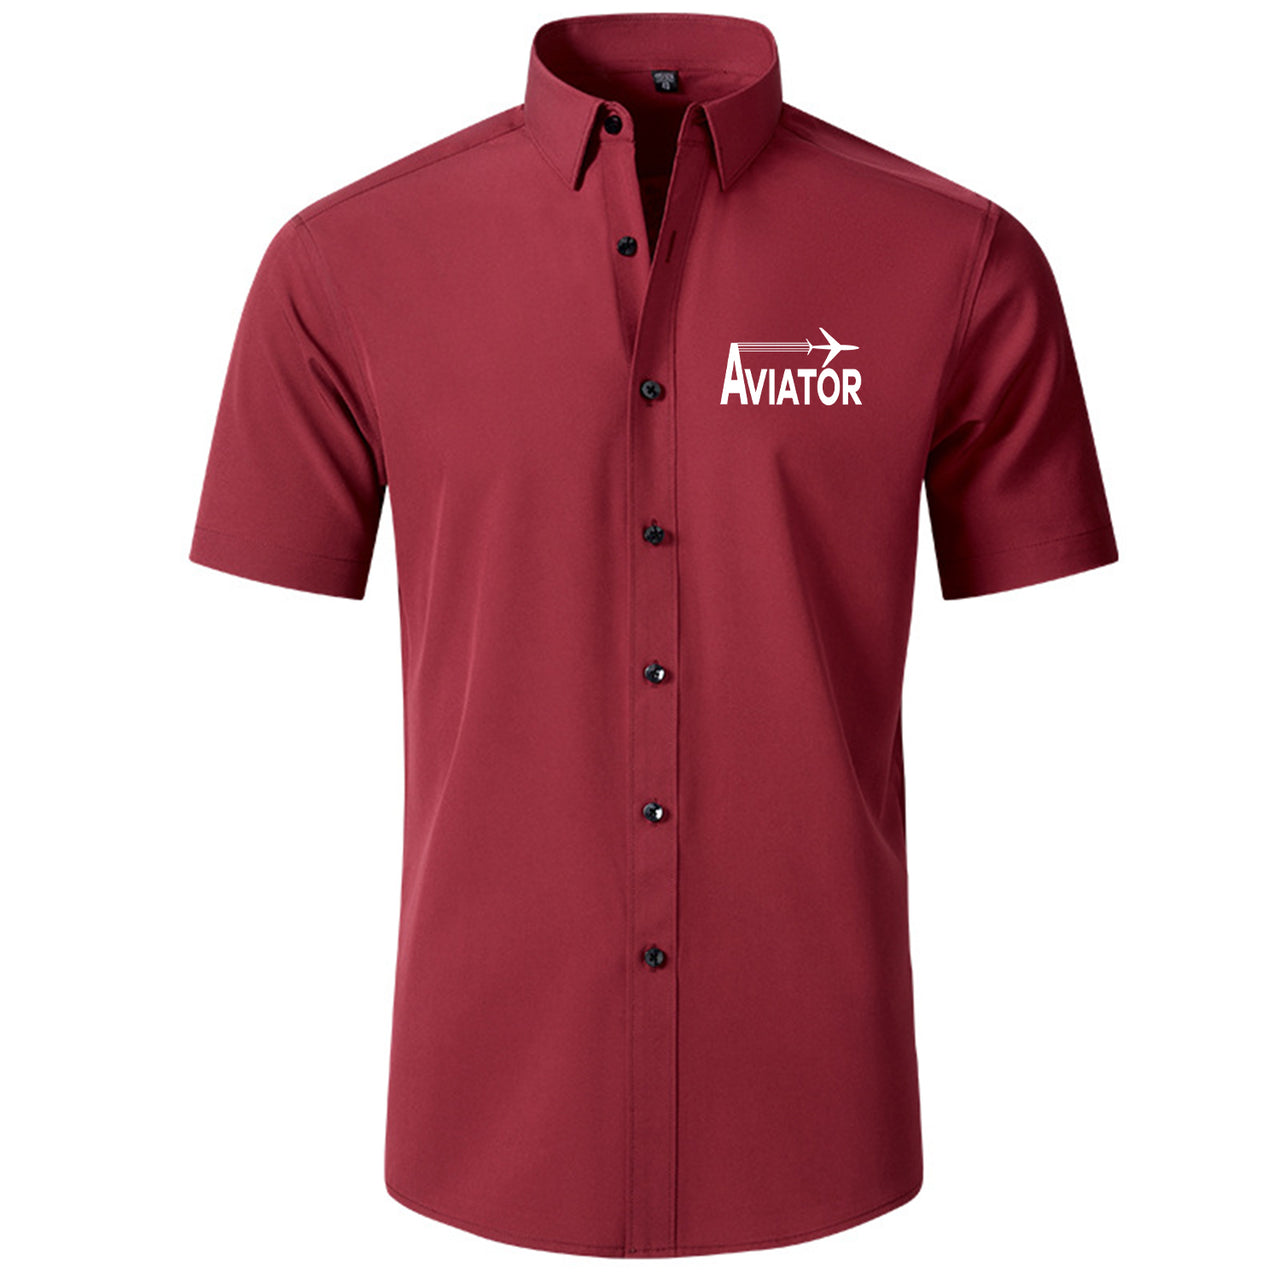 Aviator Designed Short Sleeve Shirts